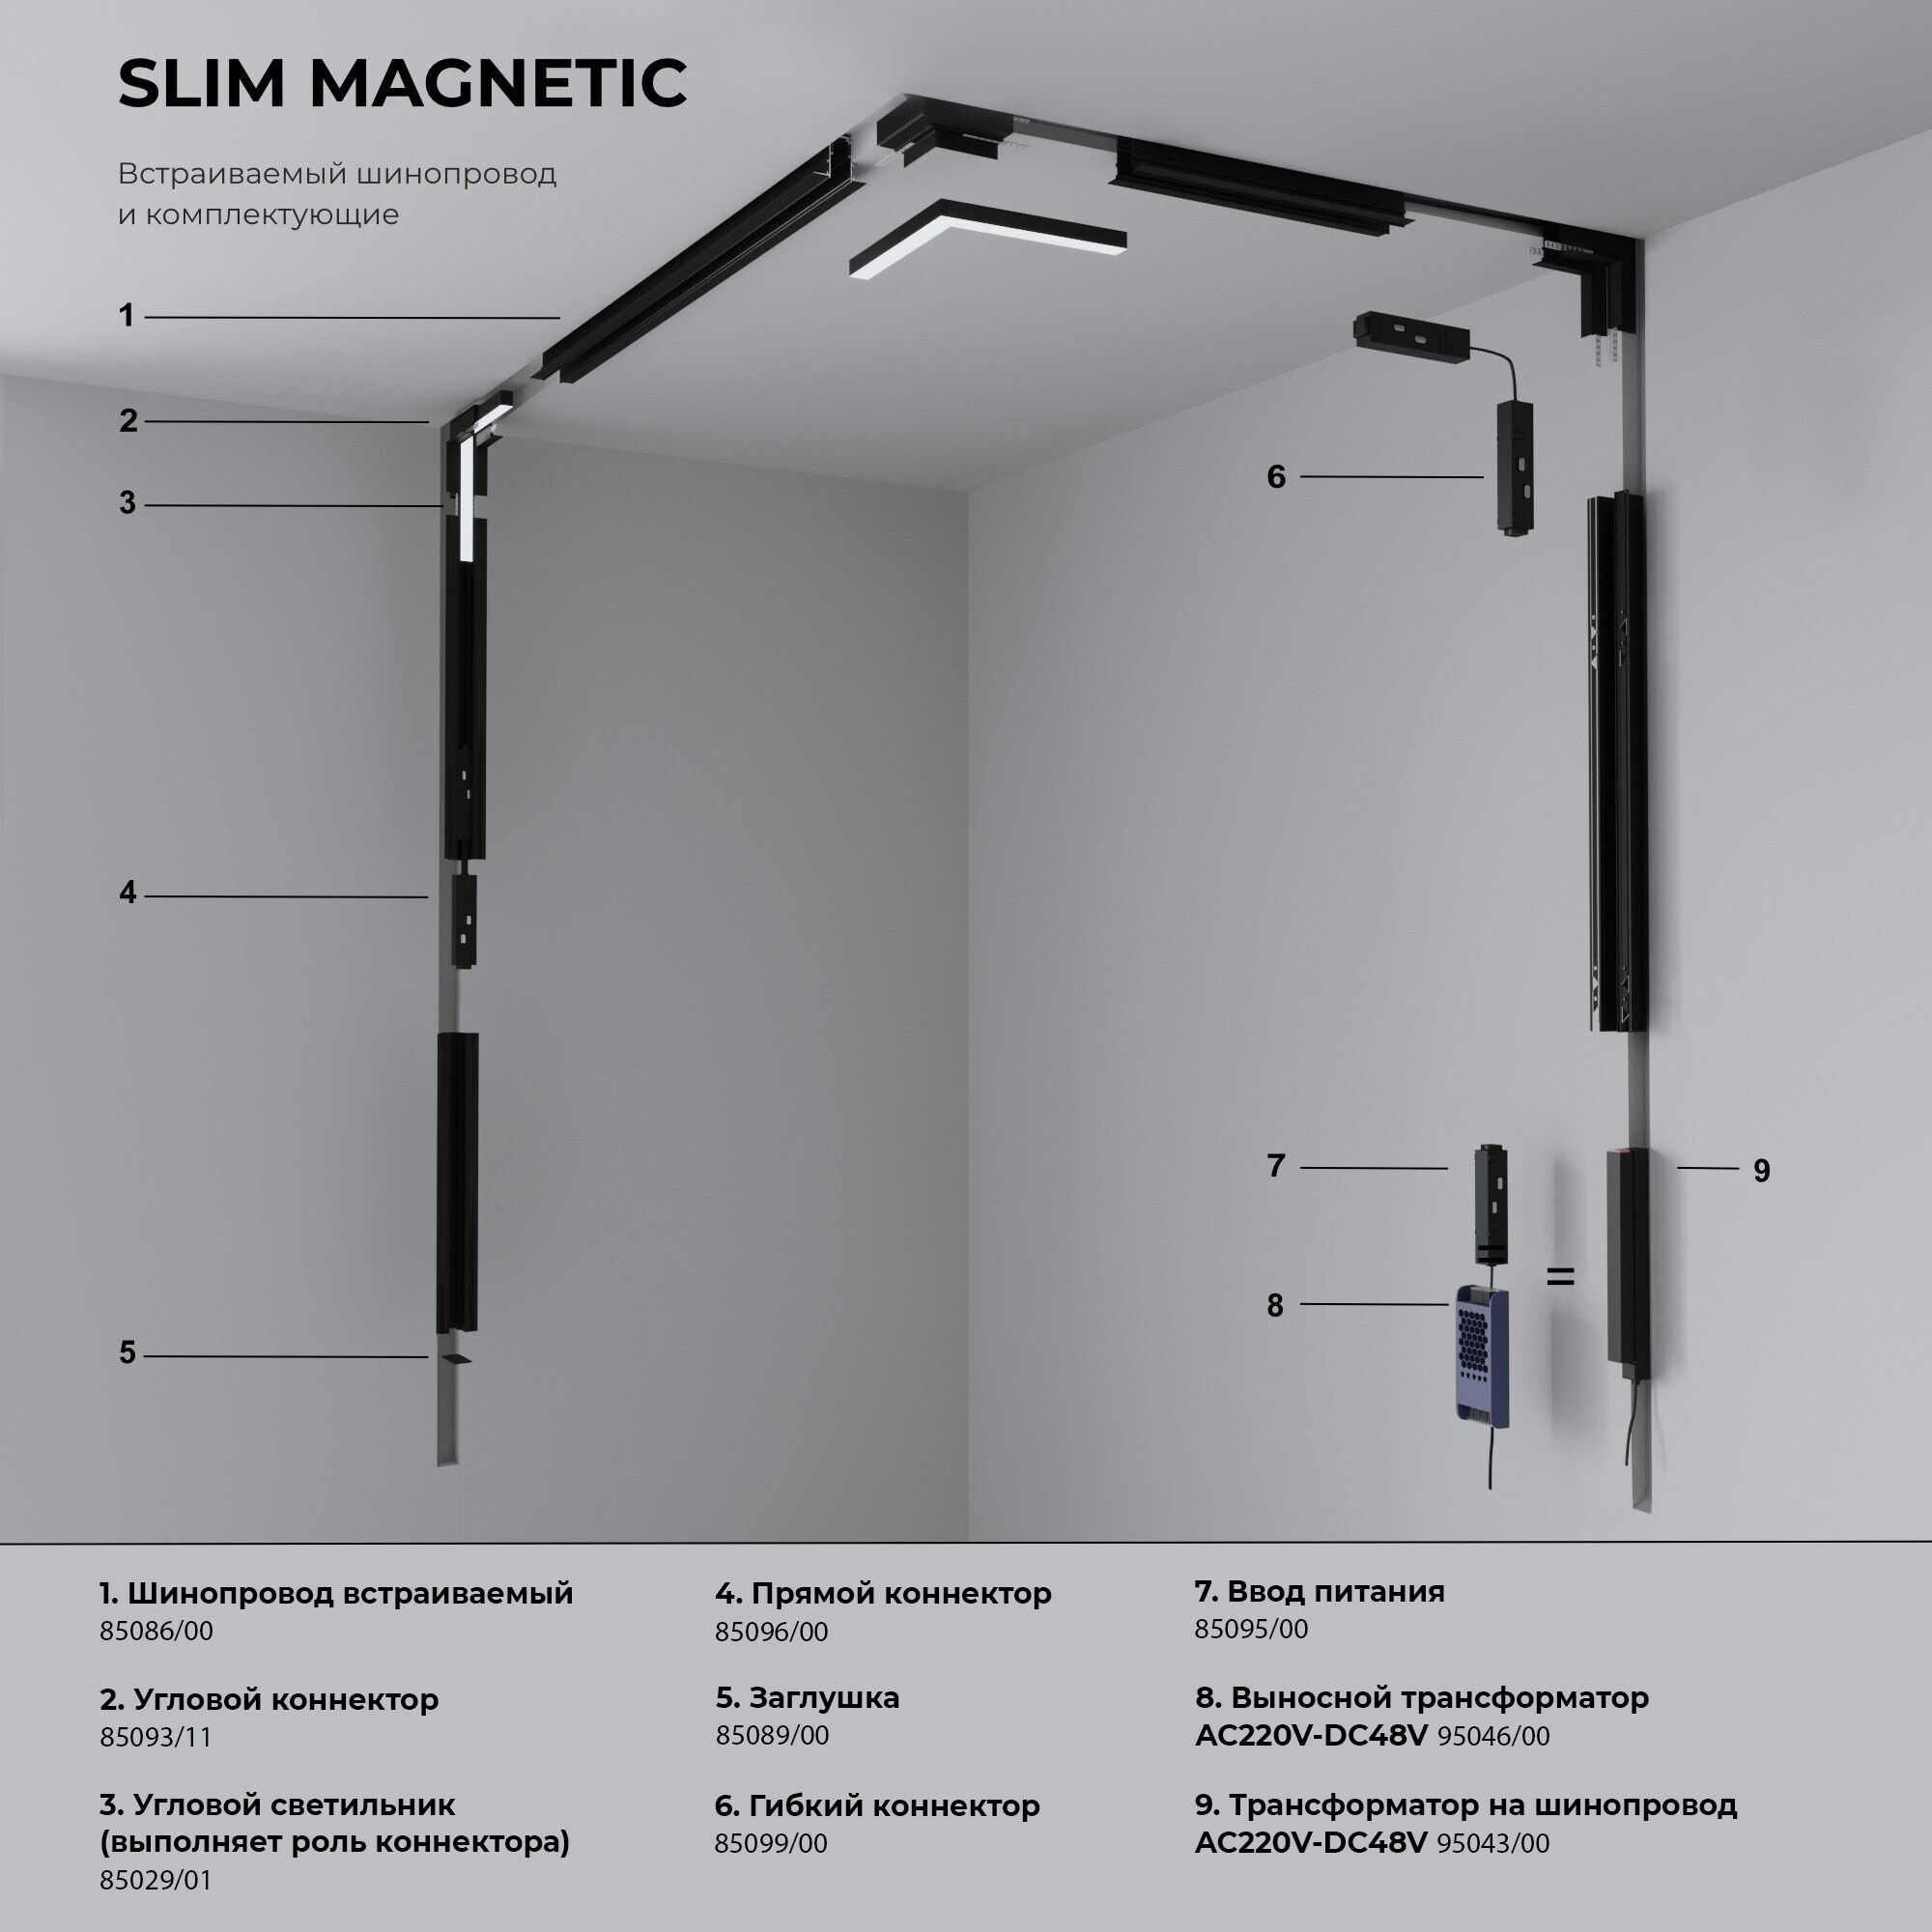 Slim Magnetic&nbsp;Ввод питания для шинопровода 85095/00